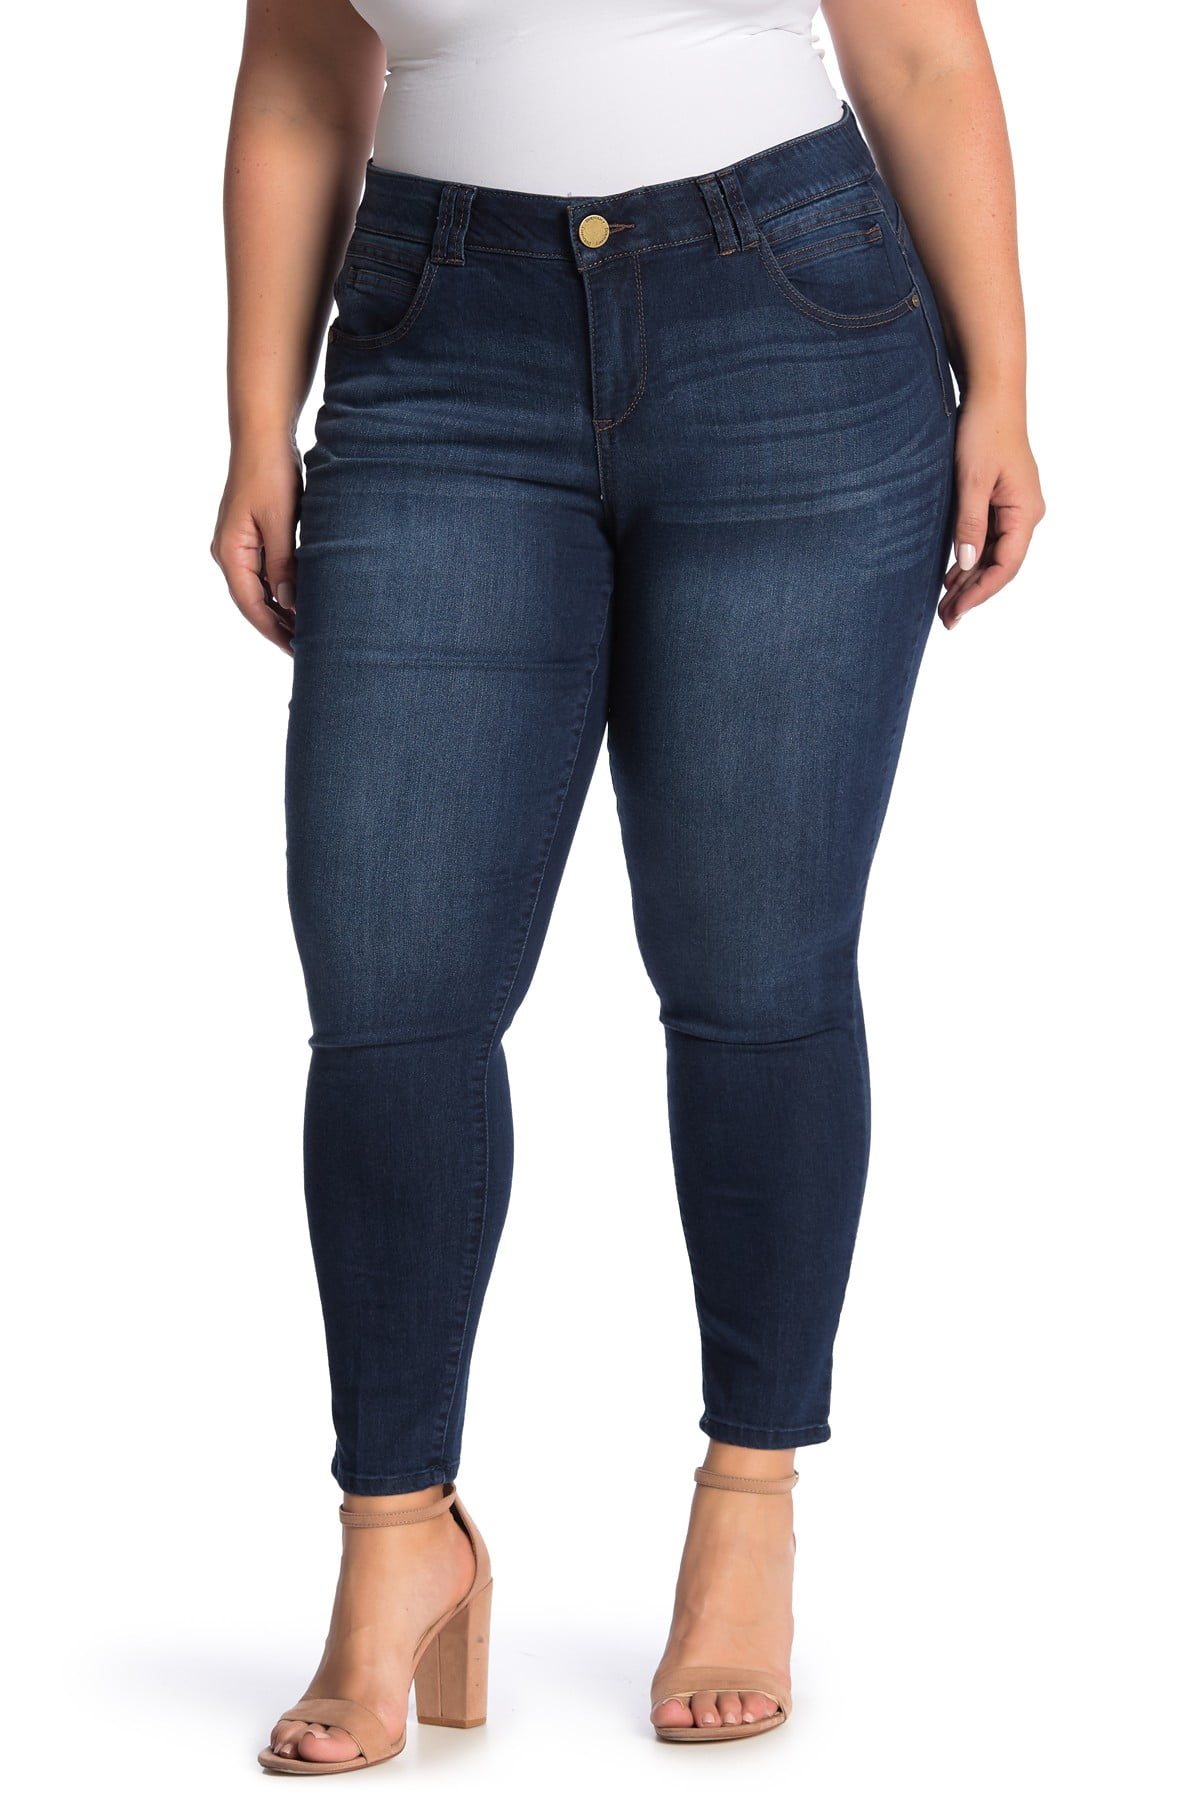 Democracy - Womens Jeans Plus Ab-Solution Skinny Stretch 16W - Walmart ...